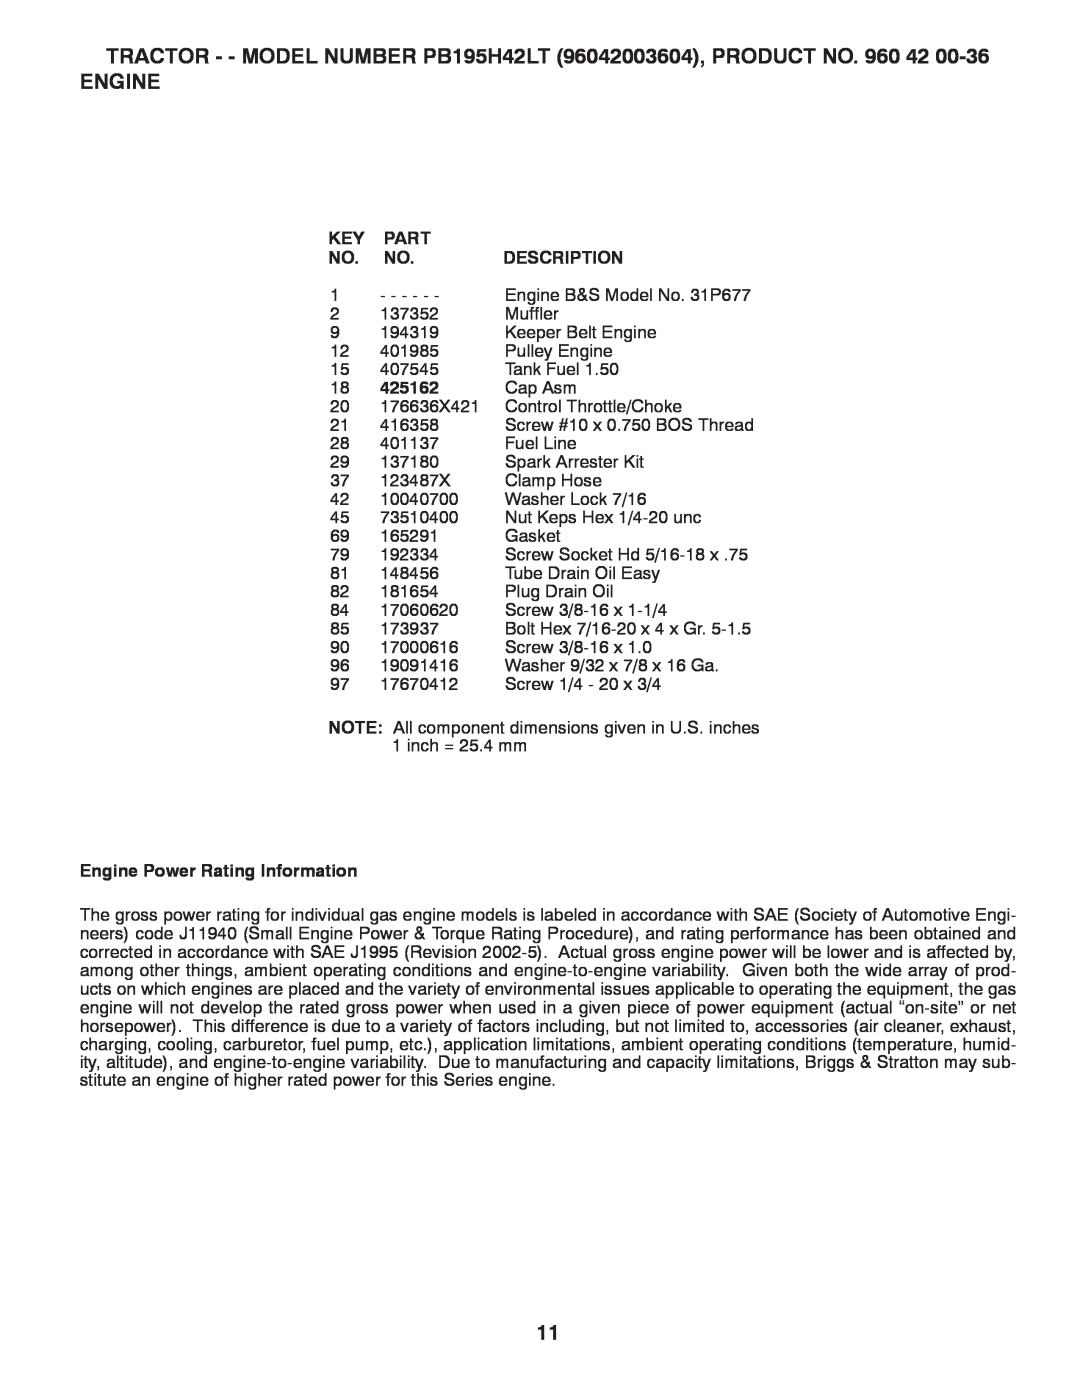 Poulan 426140, 96042003603 manual Part, Description, 425162, Engine Power Rating Information 